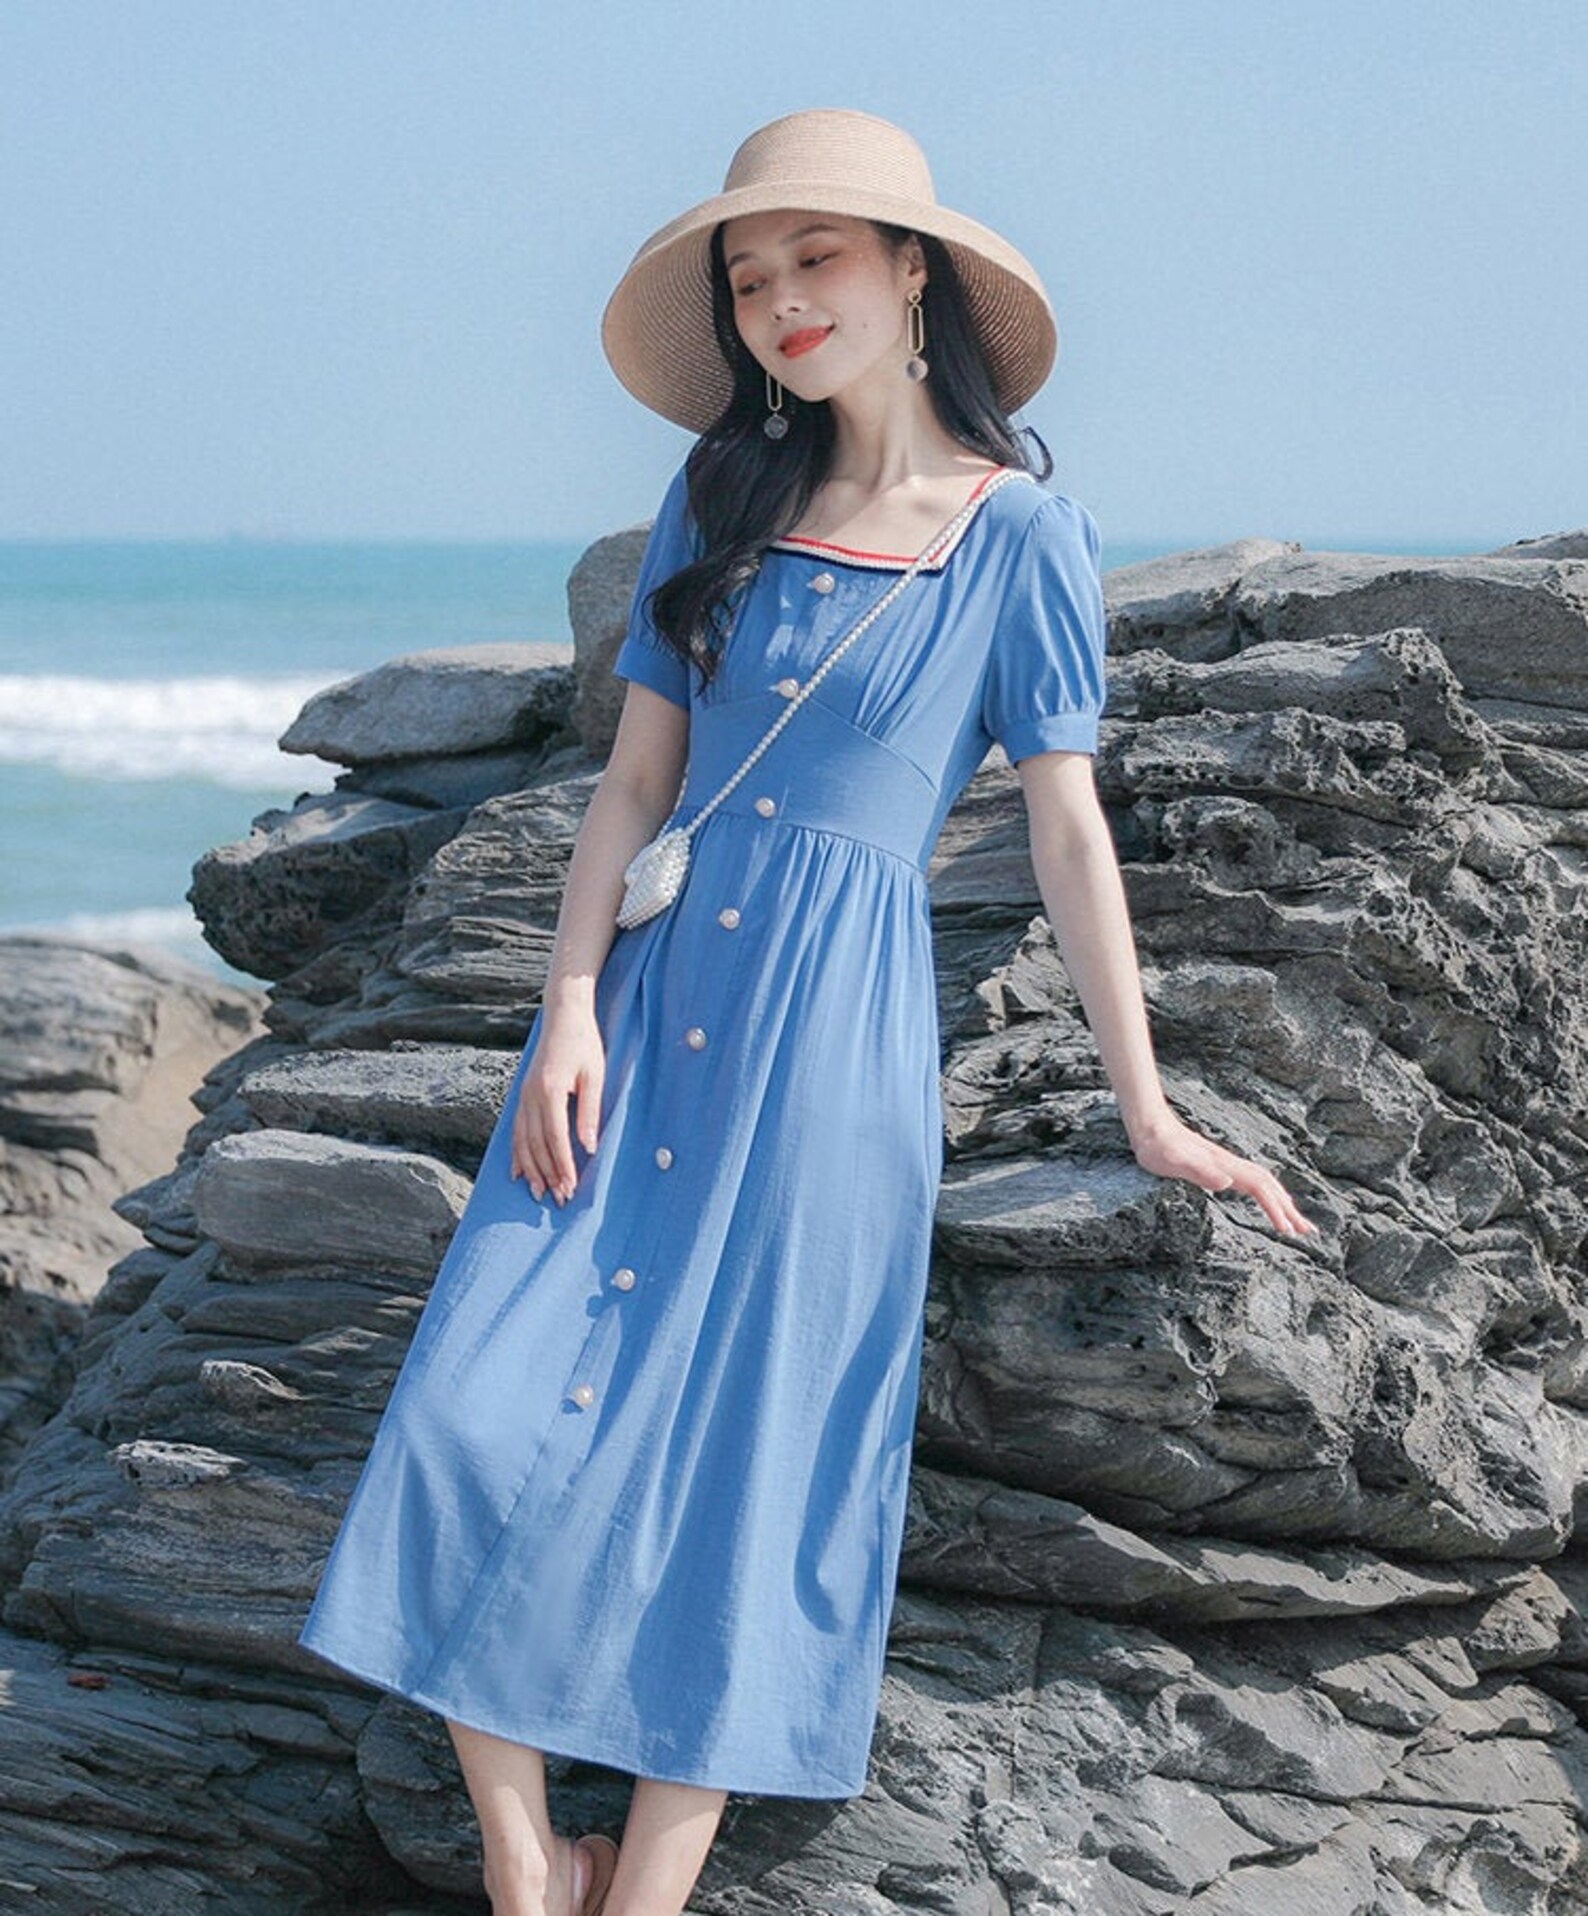 Lake Blue Puff Sleeves Vintage Cottagecore Style Midi Dress | Etsy